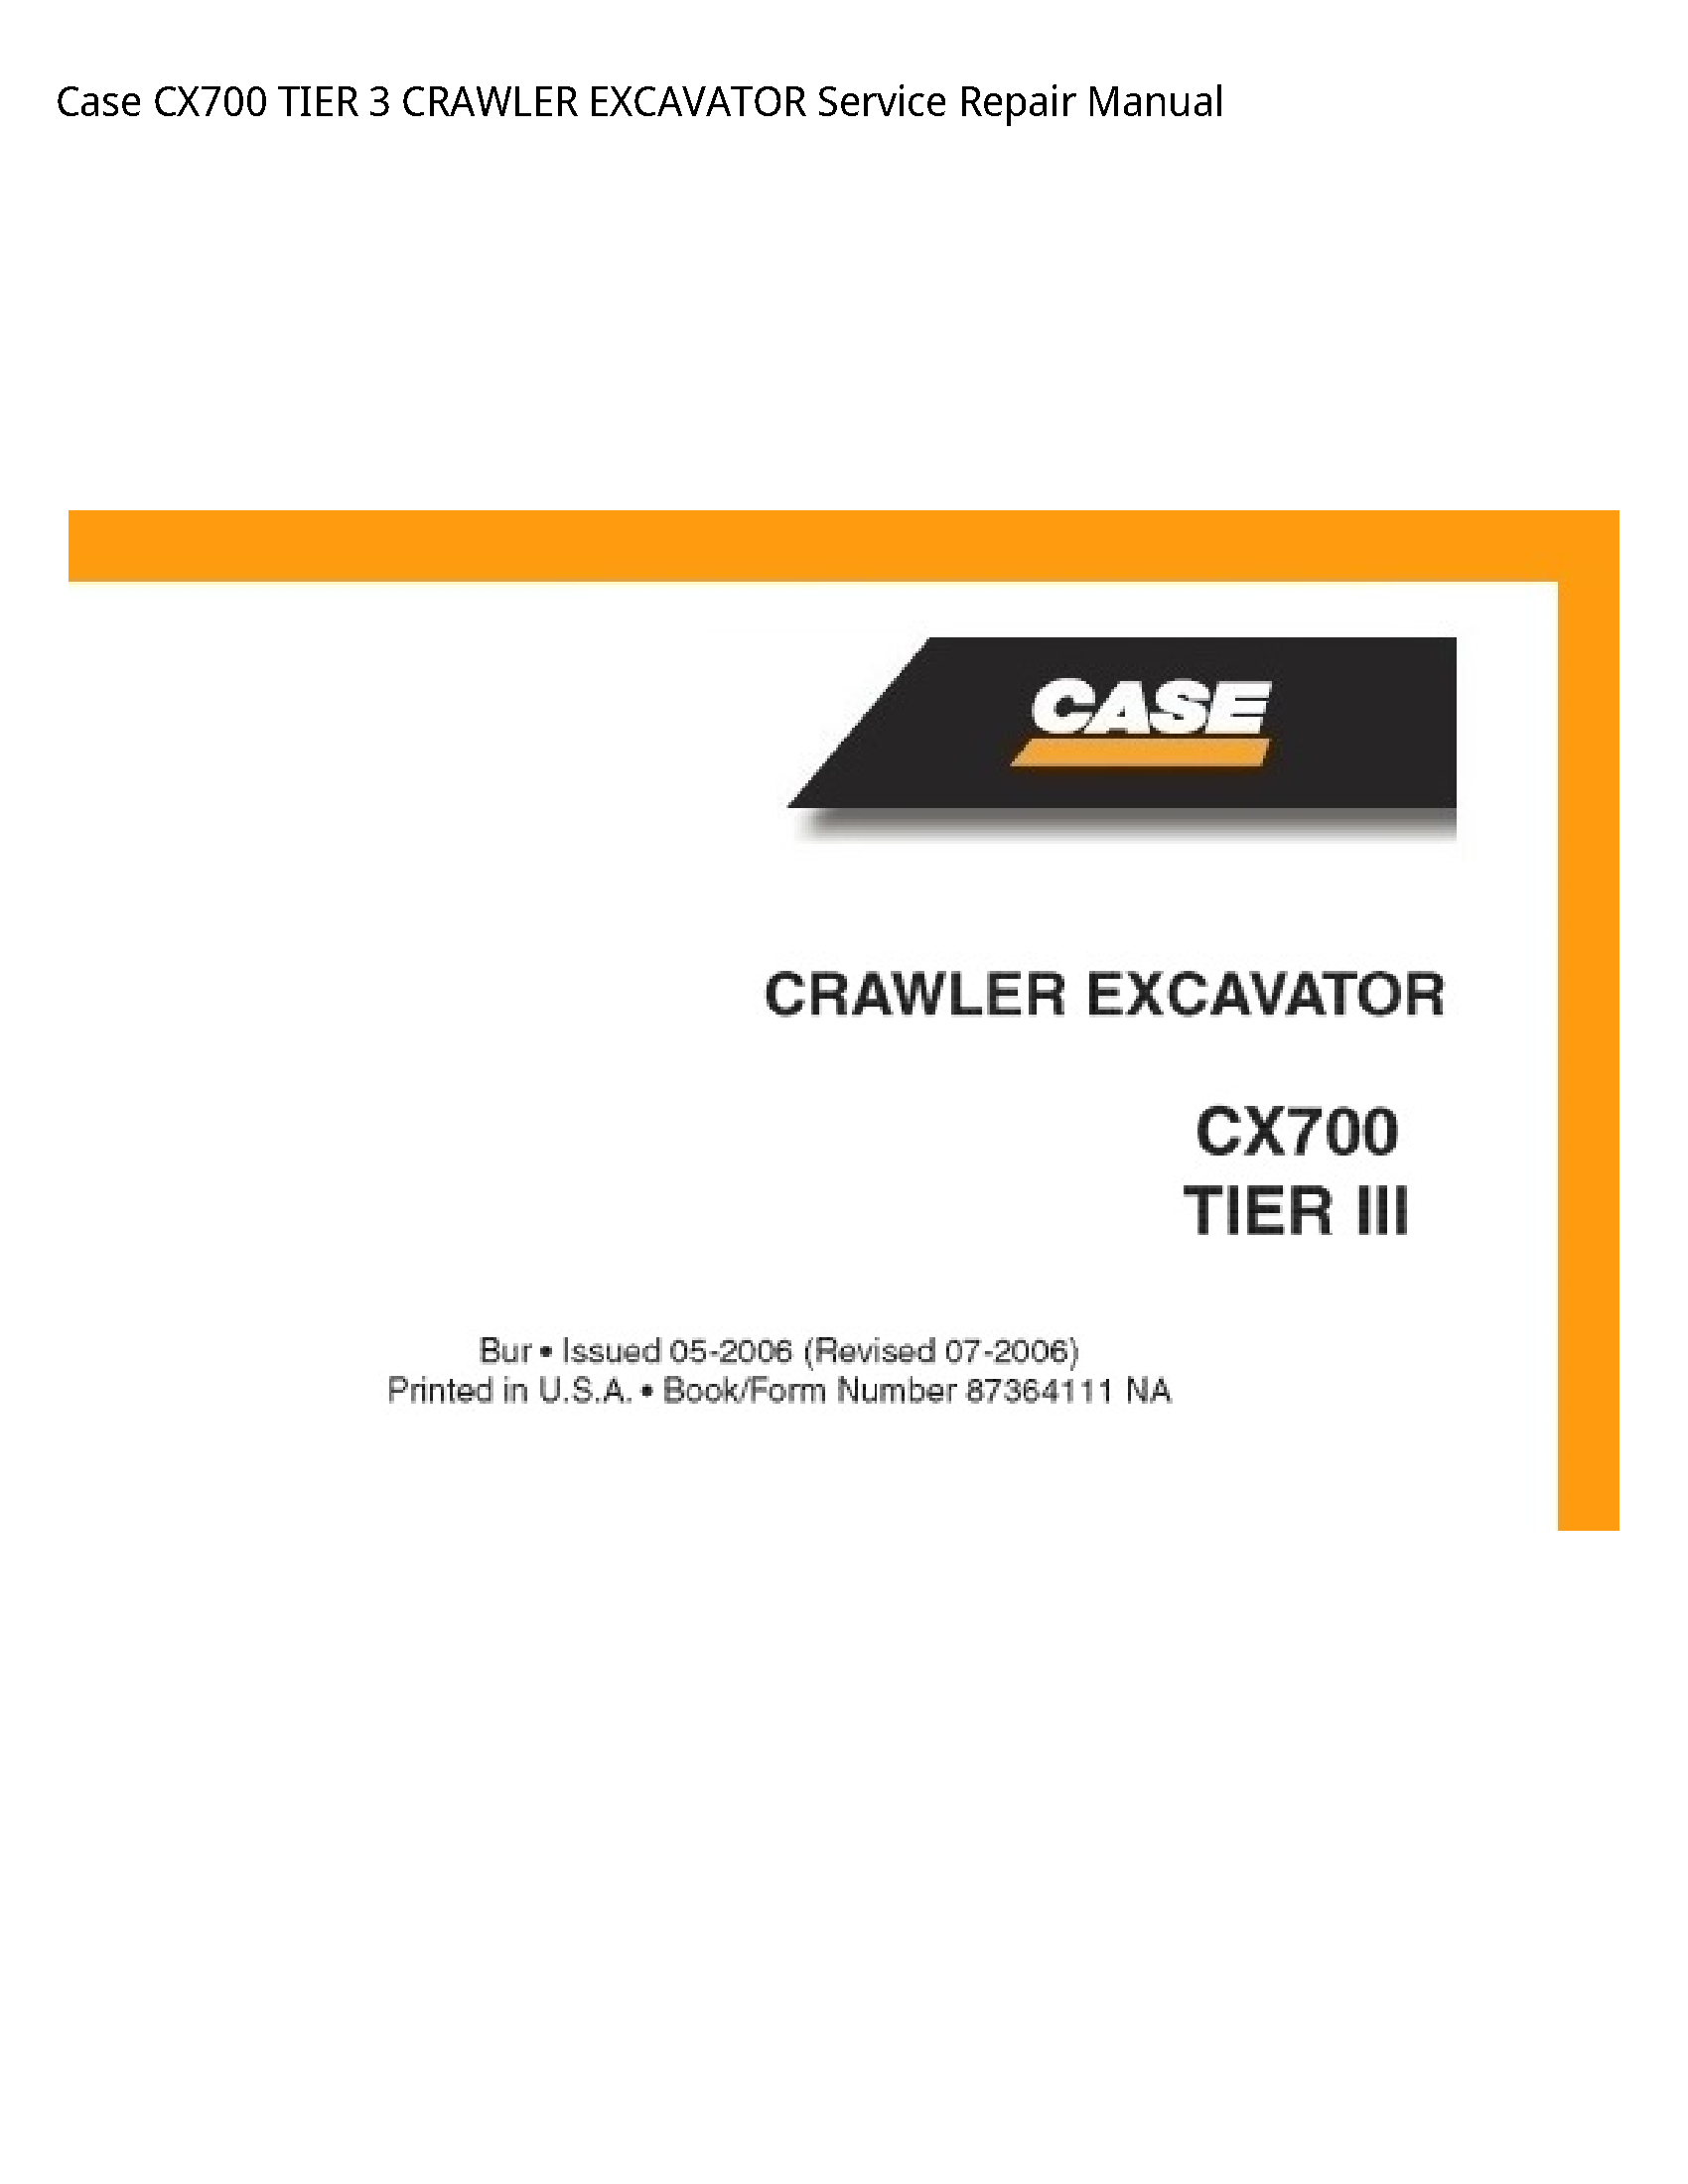 Case/Case IH CX700 TIER CRAWLER EXCAVATOR manual